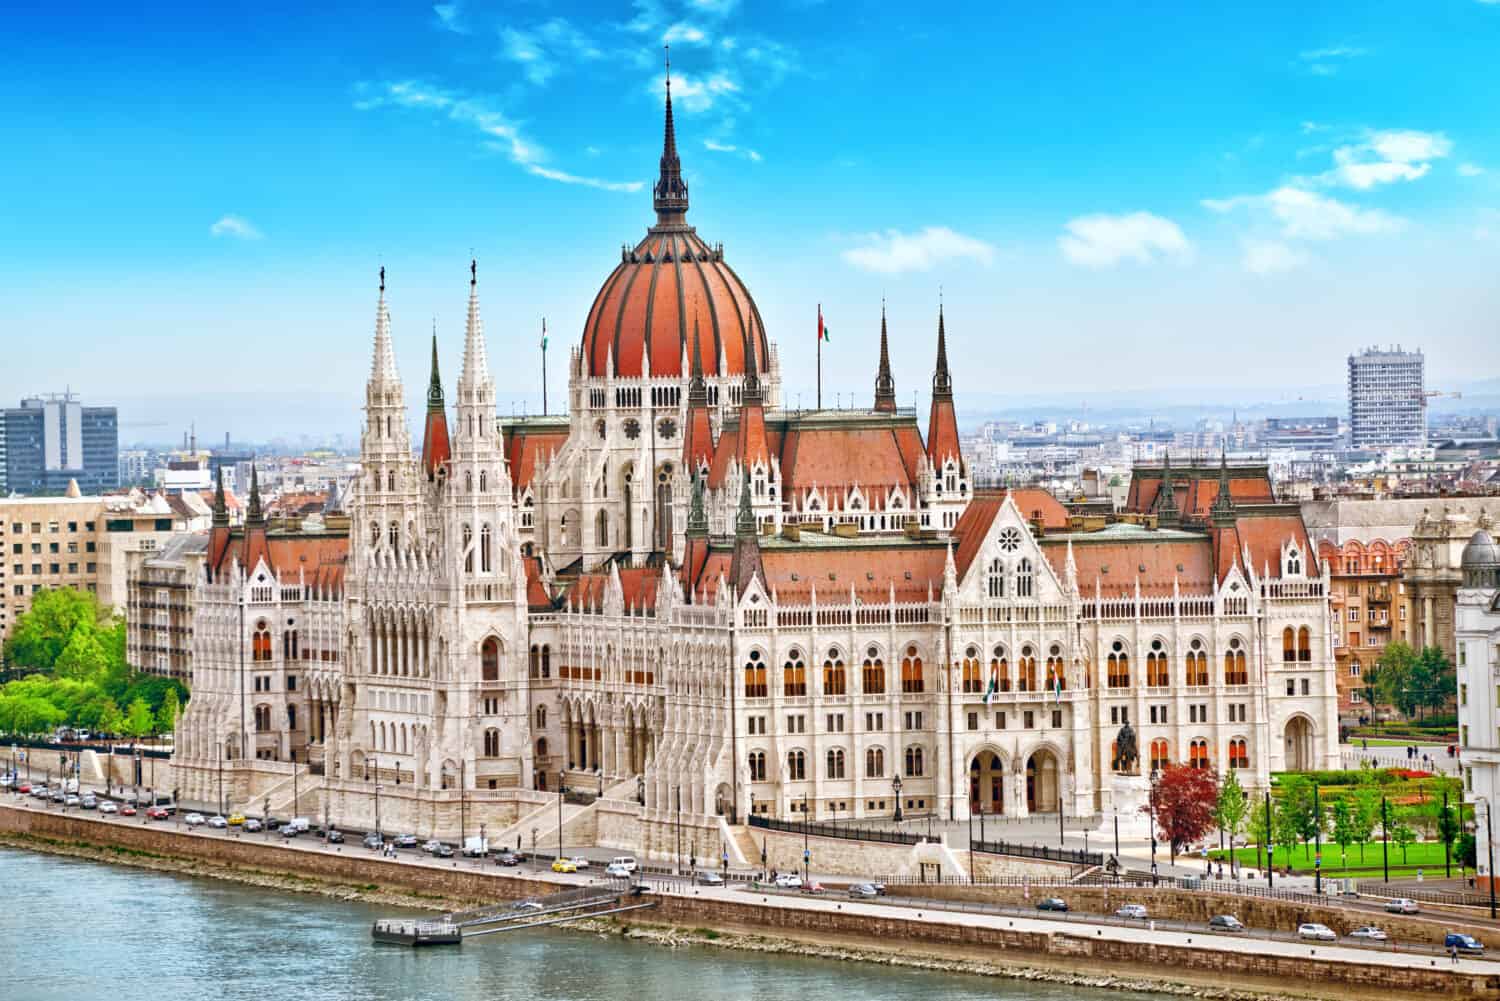 Parlamento ungherese durante il giorno.  Budapest.  Uno degli edifici più belli della capitale ungherese.